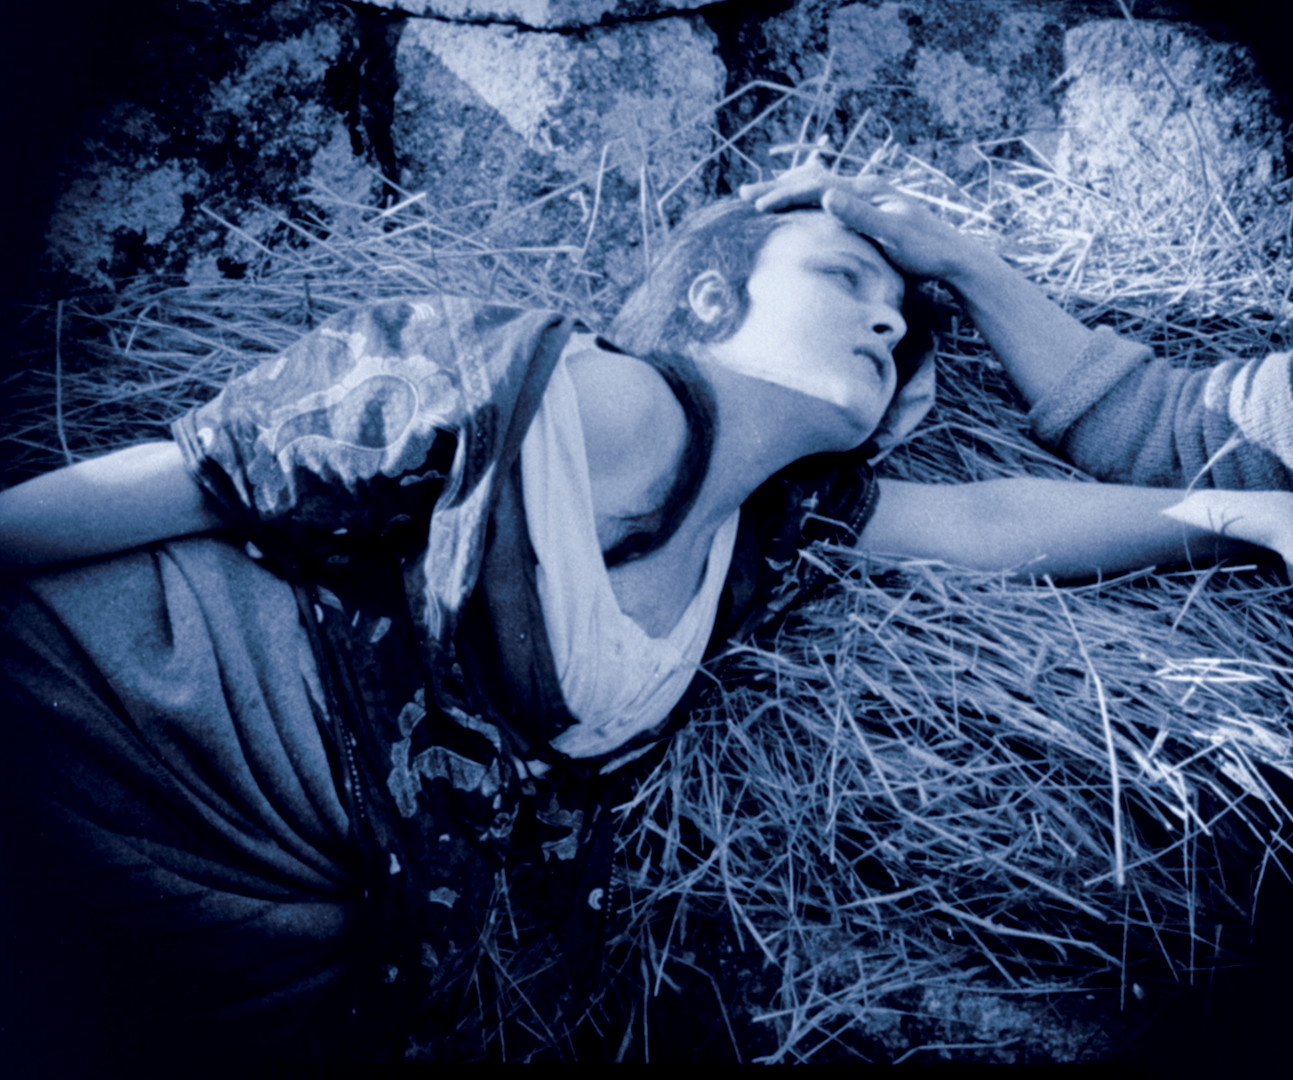 Mulher em aflição. Fotograma em tons de azul do filme "Os Lobos" (19239 de Rino Lupo 